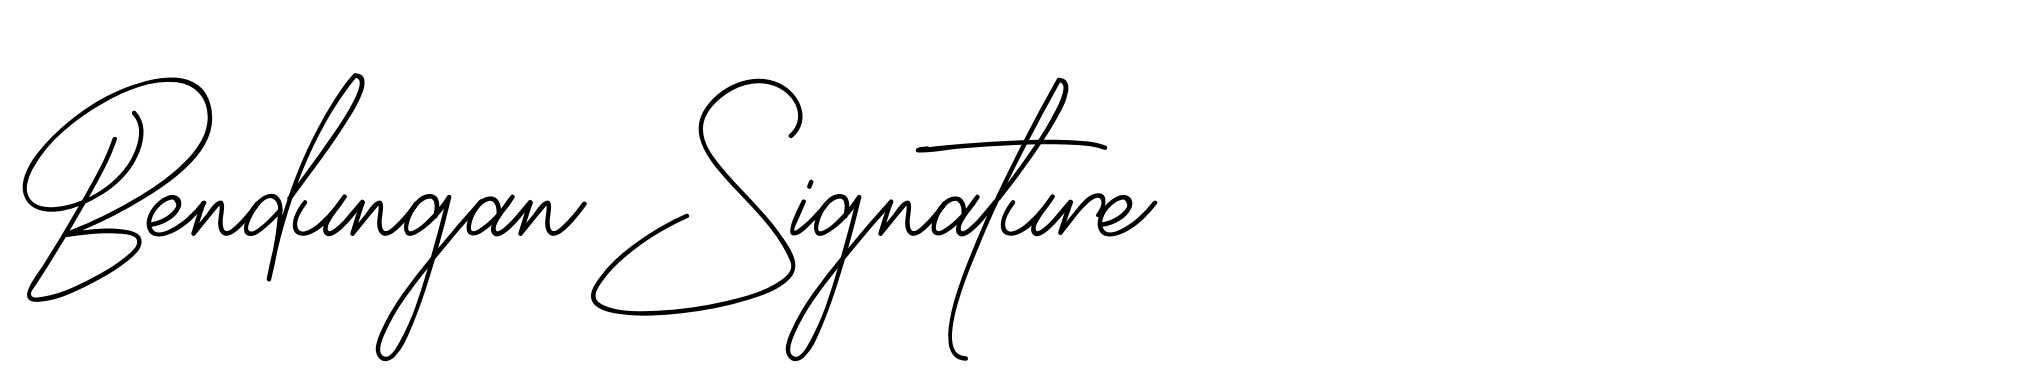 Bendungan Signature image